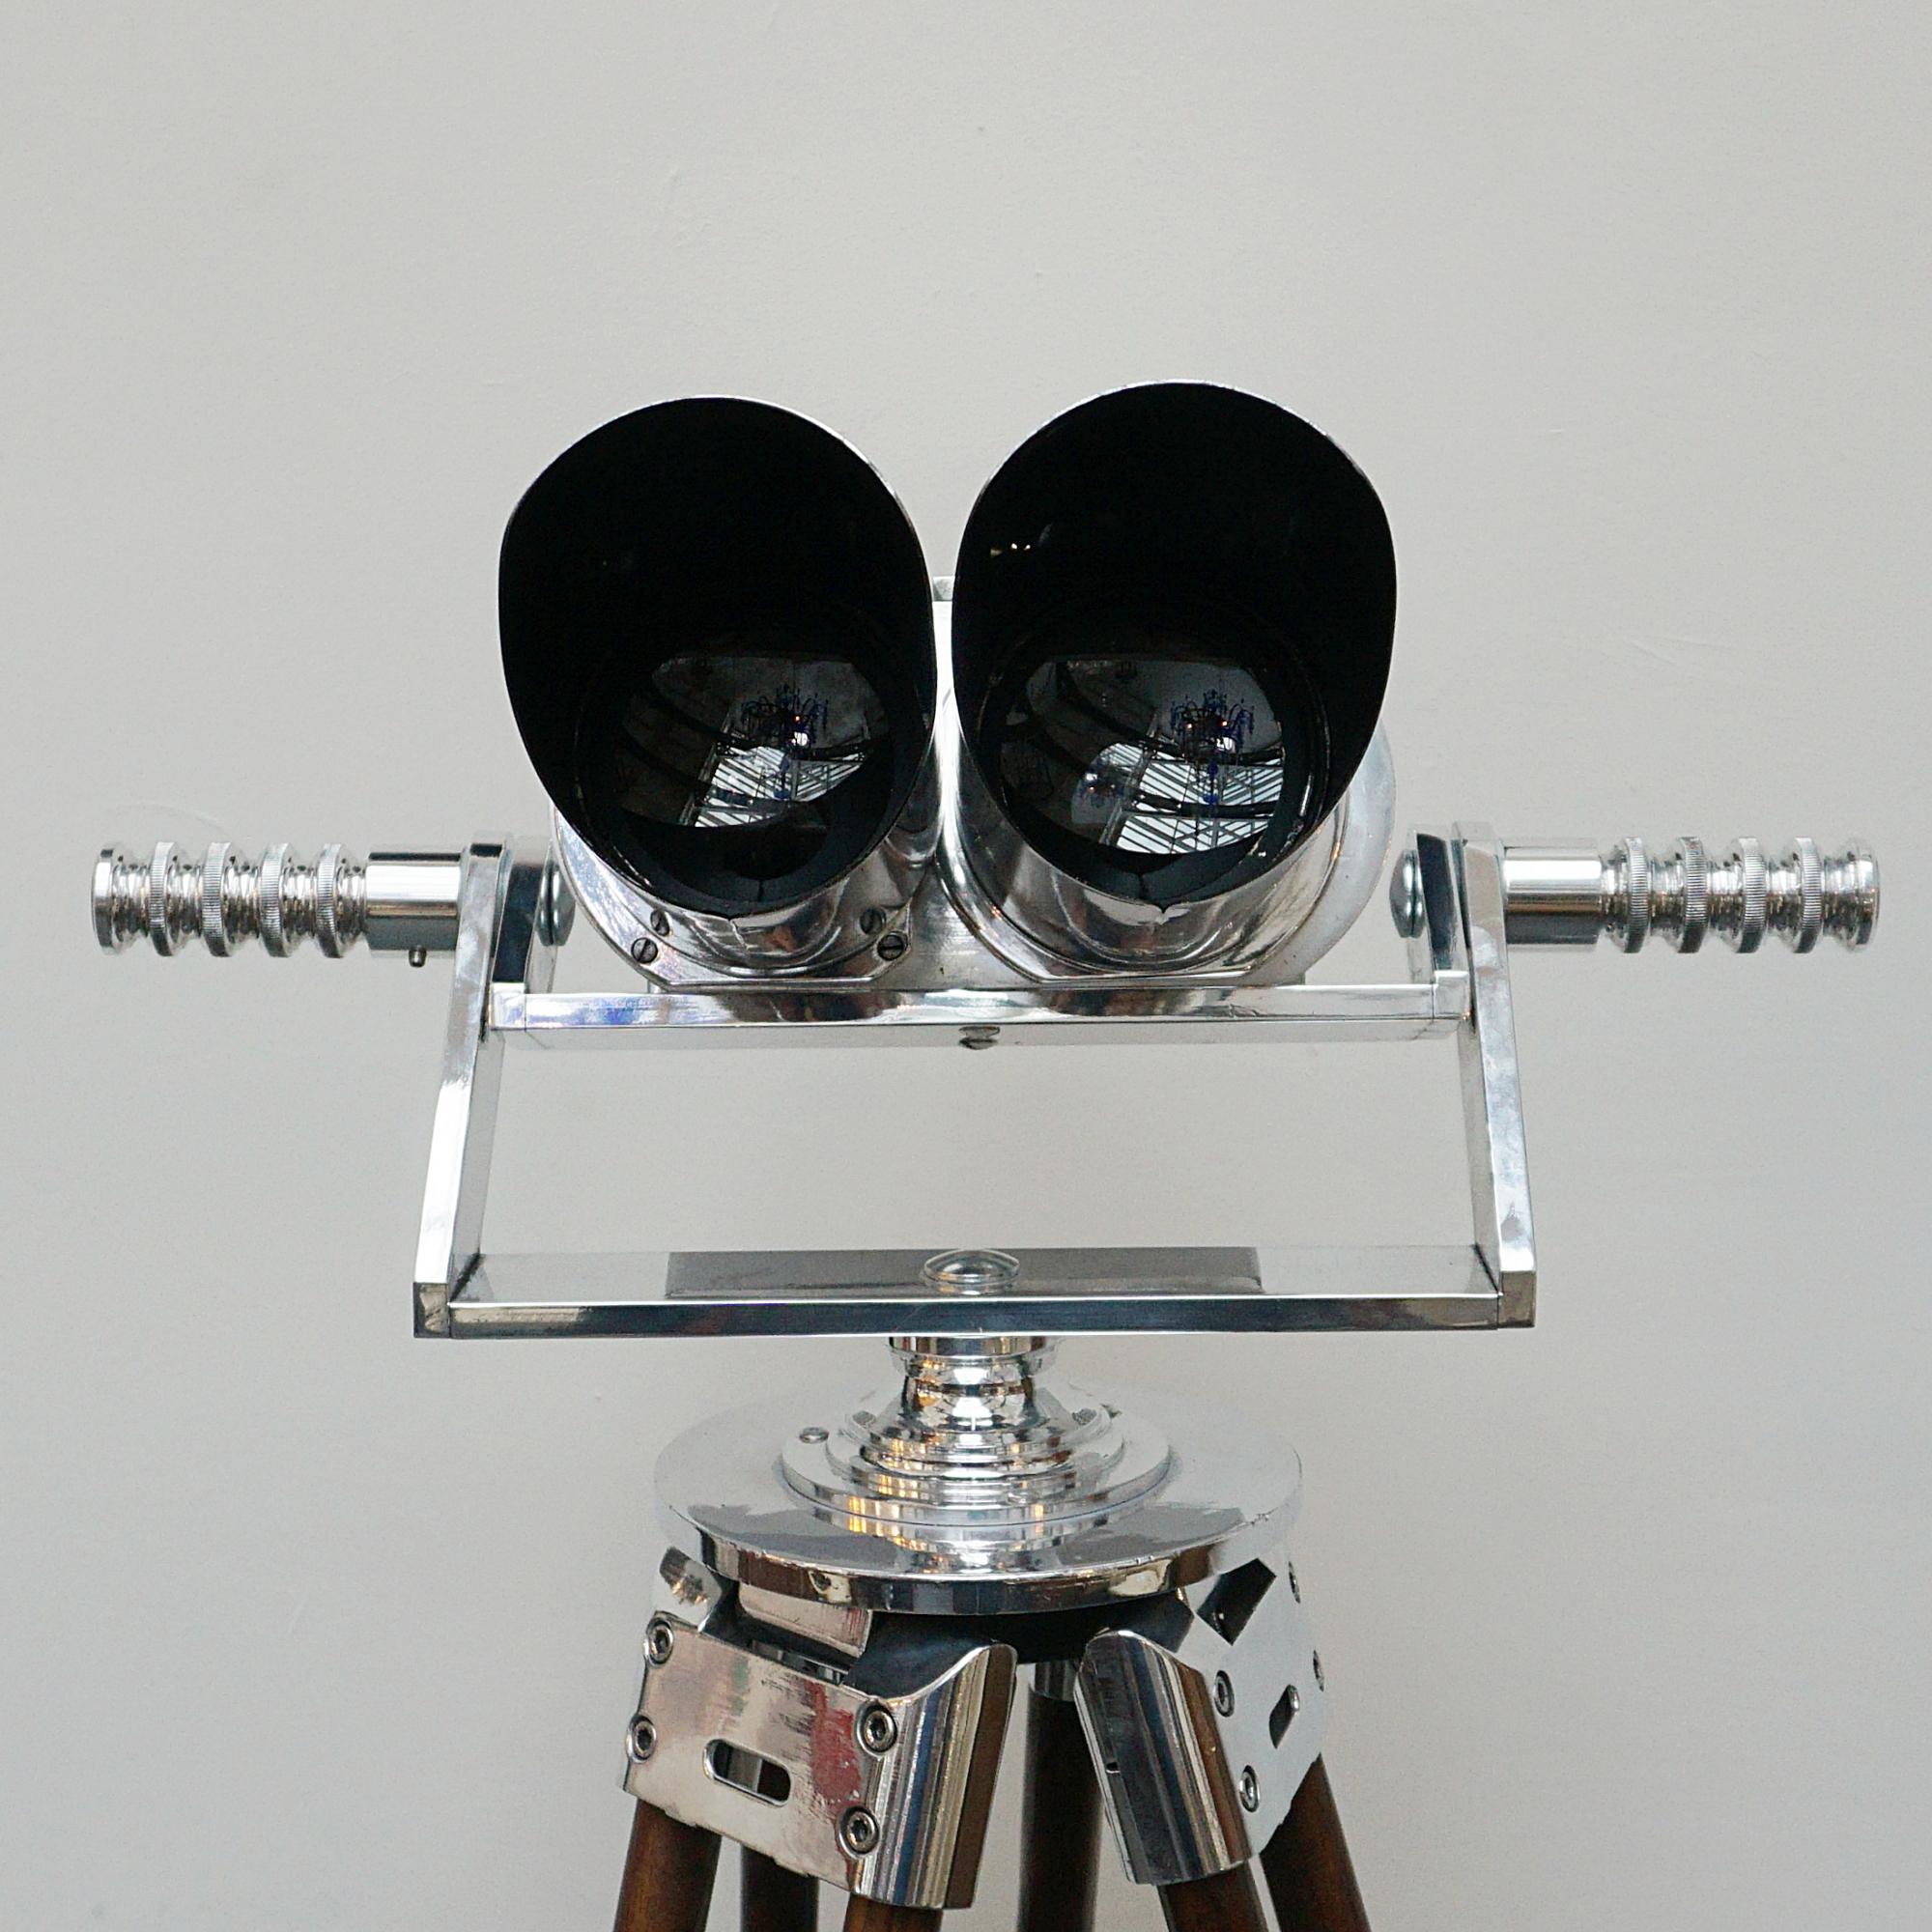 10 X 80 WW11 Marine Binoculars by Zeiss 3